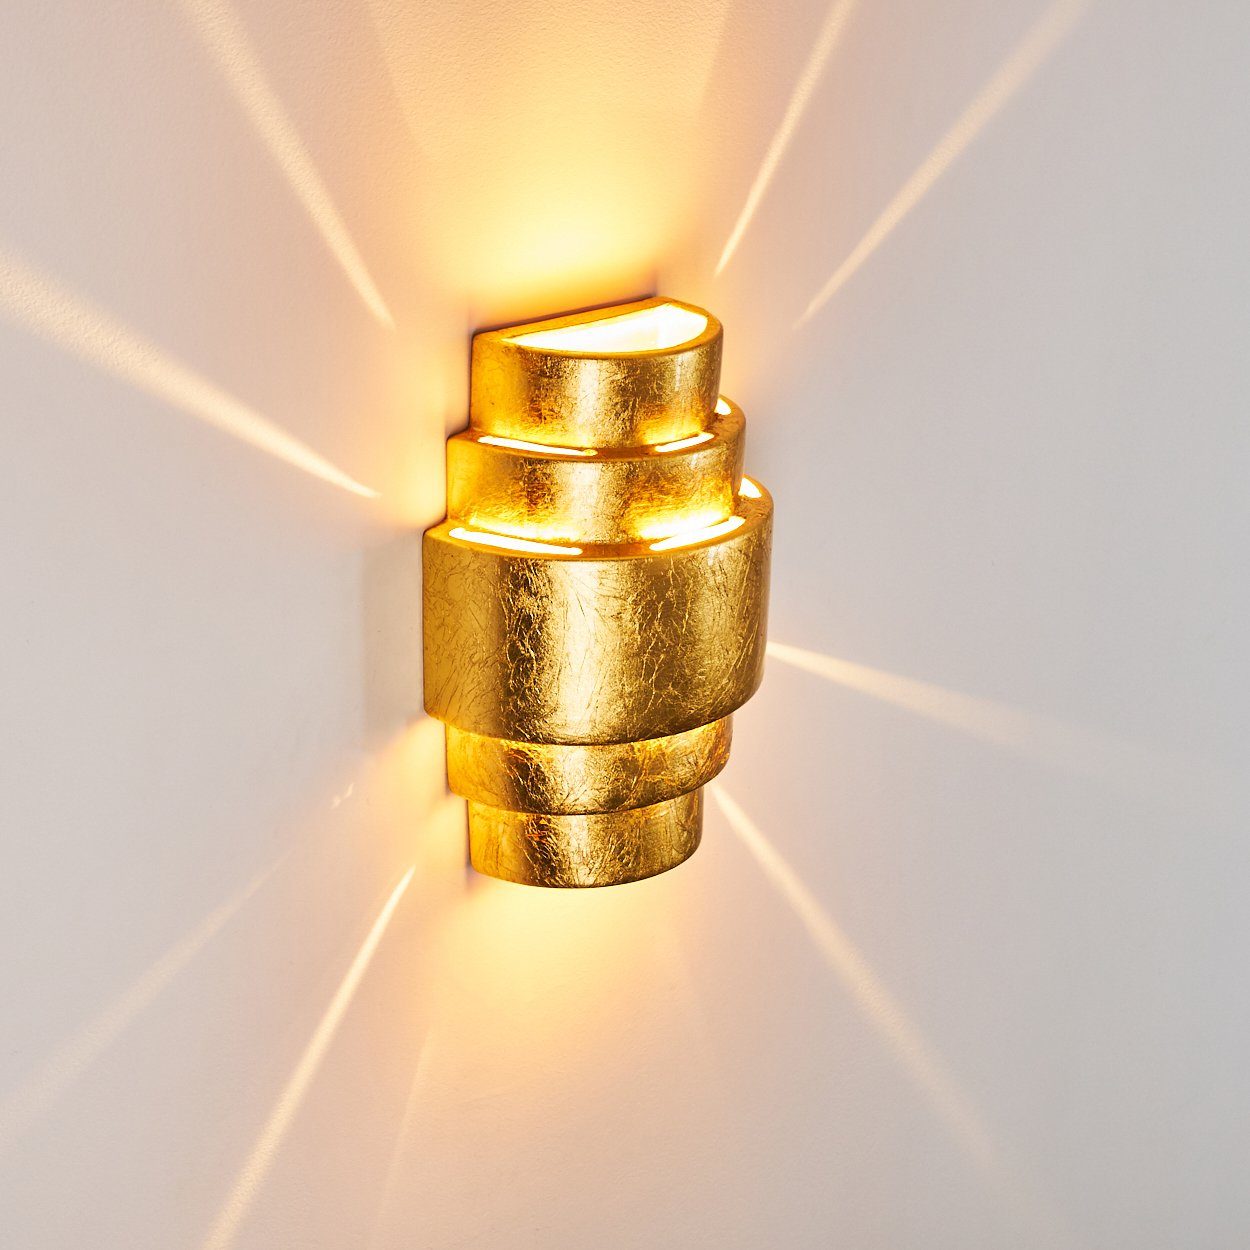 hofstein Wandleuchte Innen Wandlampe & ohne Down-Effekt, mit Gold, »Borore« 1xE27, in Up Blattgold-Effekt Keramik mit Leuchtmittel, aus